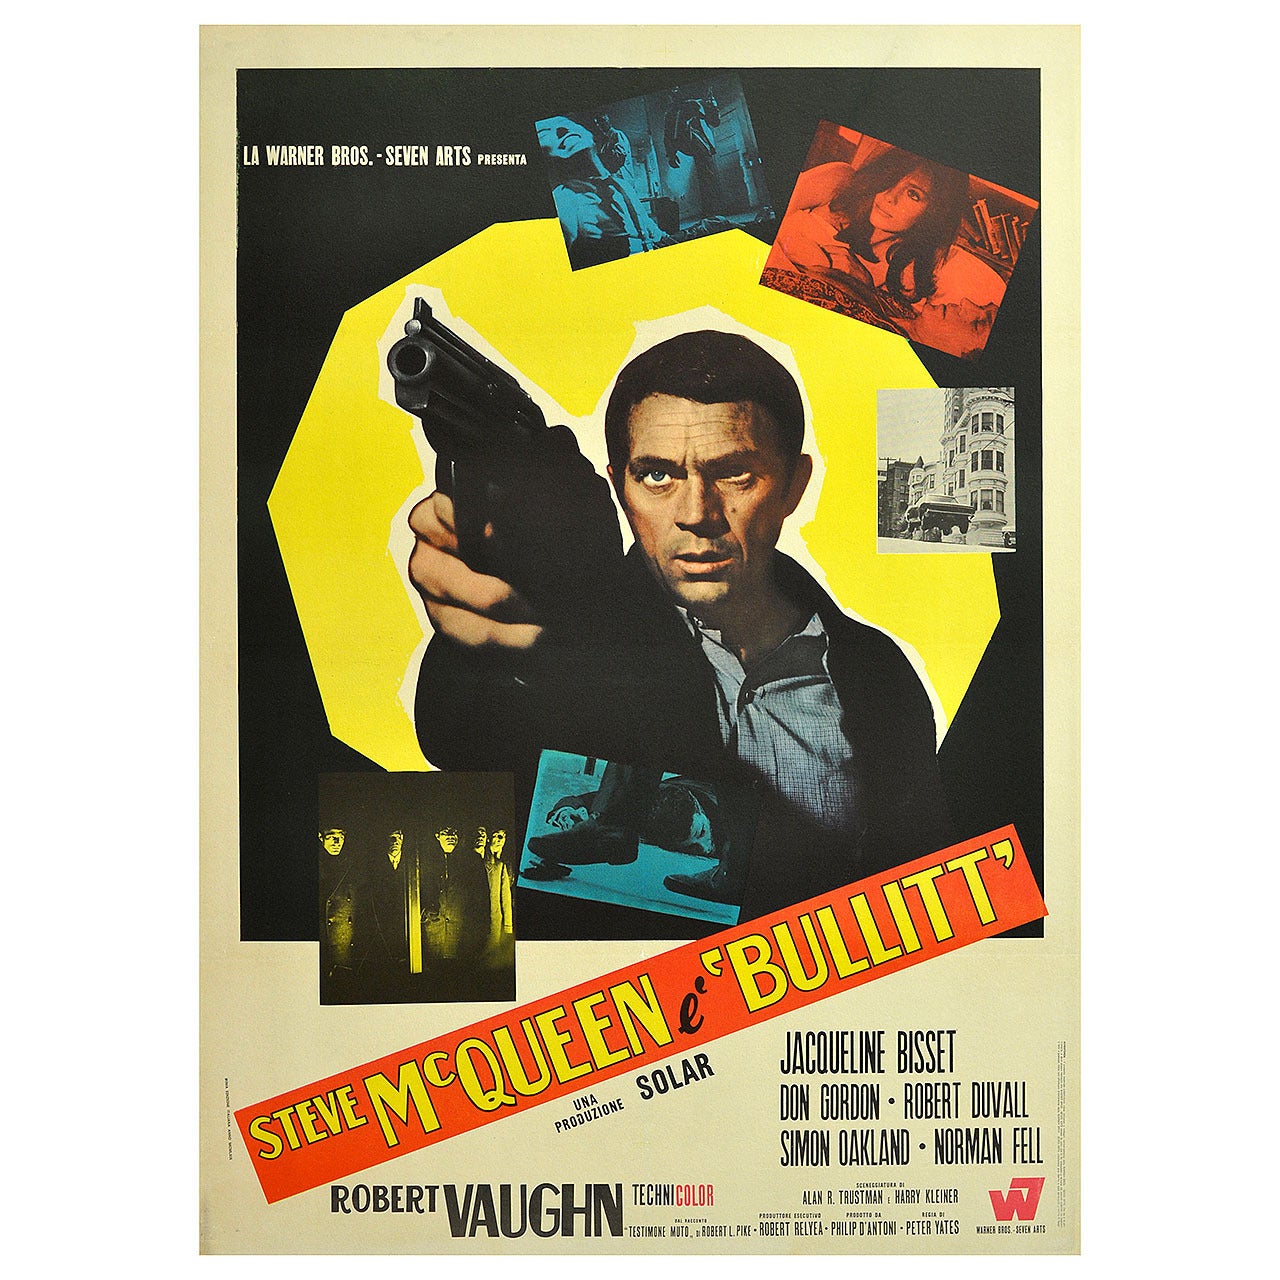 Original Vintage Movie Poster for the Film "Bullitt, " Starring Steve McQueen